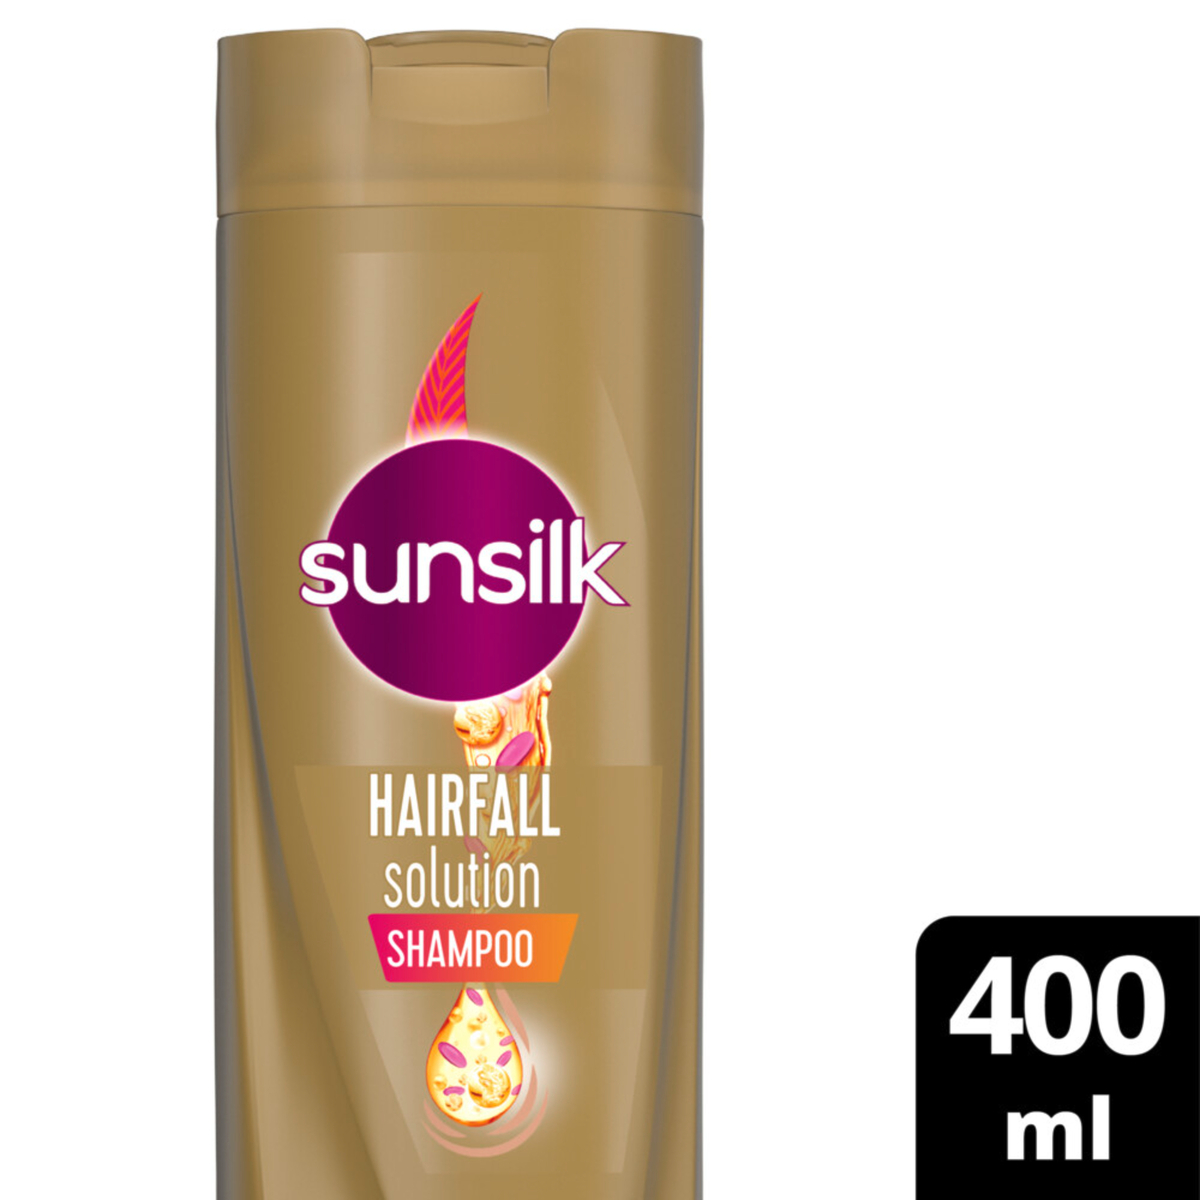 اشتري قم بشراء صانسيلك شامبو لتساقط الشعر ، 400 مل Online at Best Price من الموقع - من لولو هايبر ماركت Shampoo في الامارات